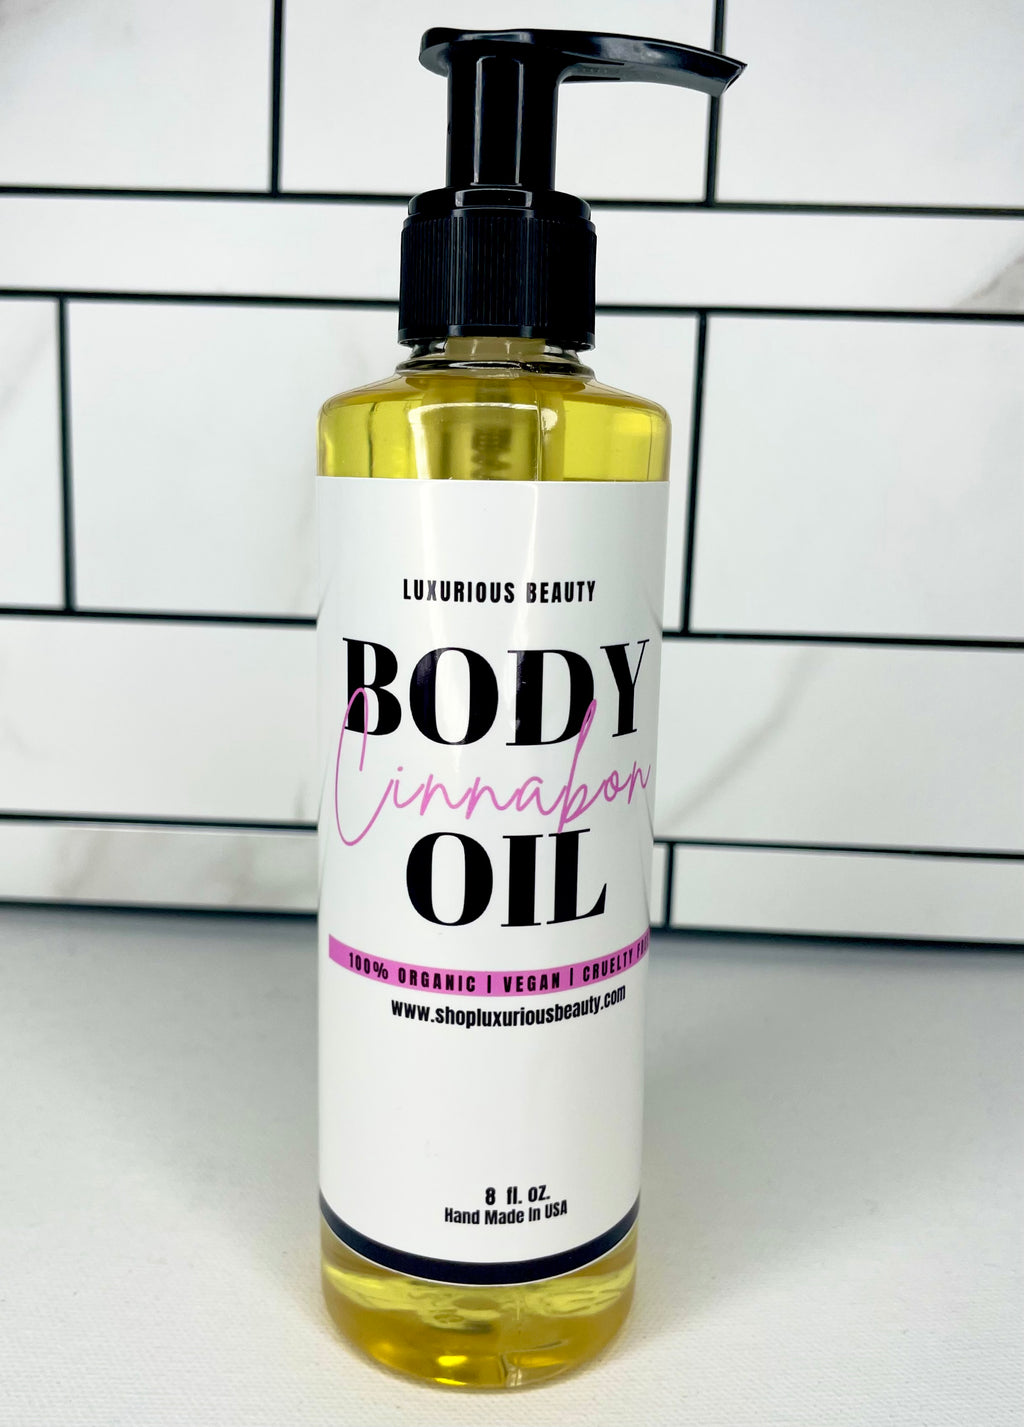 Cinnabon Body Oil